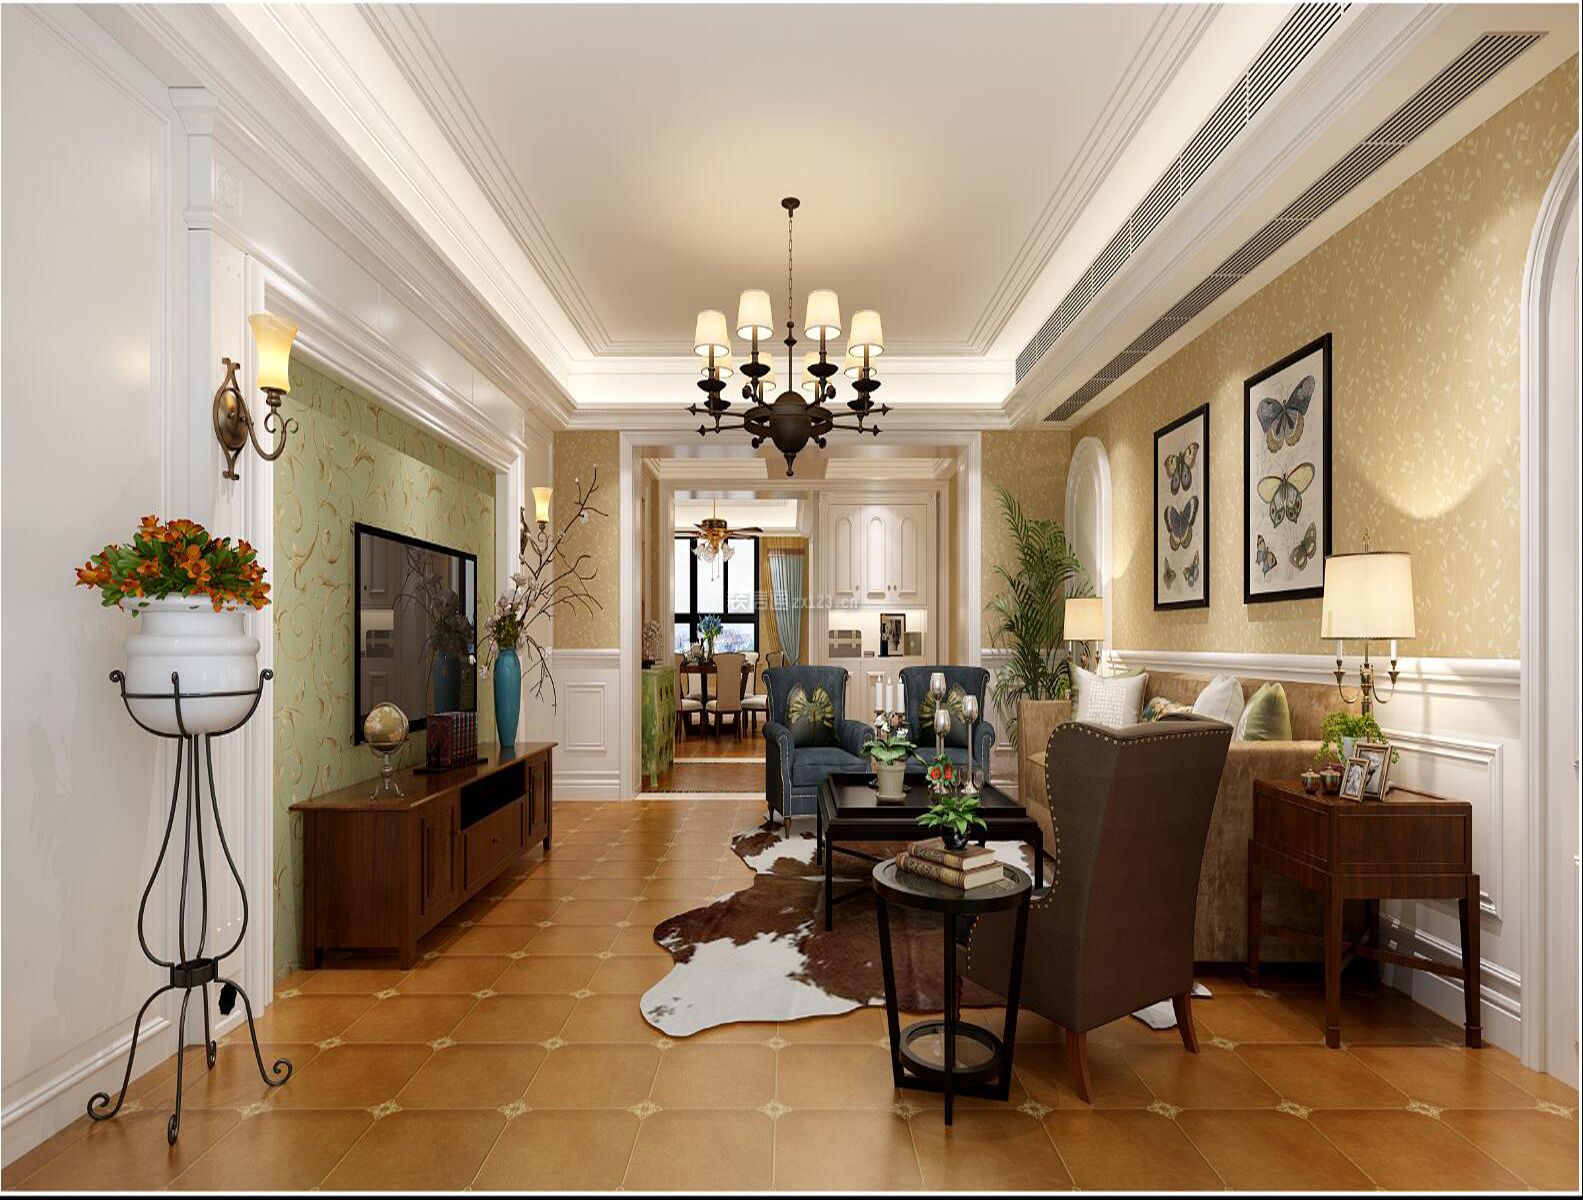 美式客厅设计效果图 美式客厅图片 